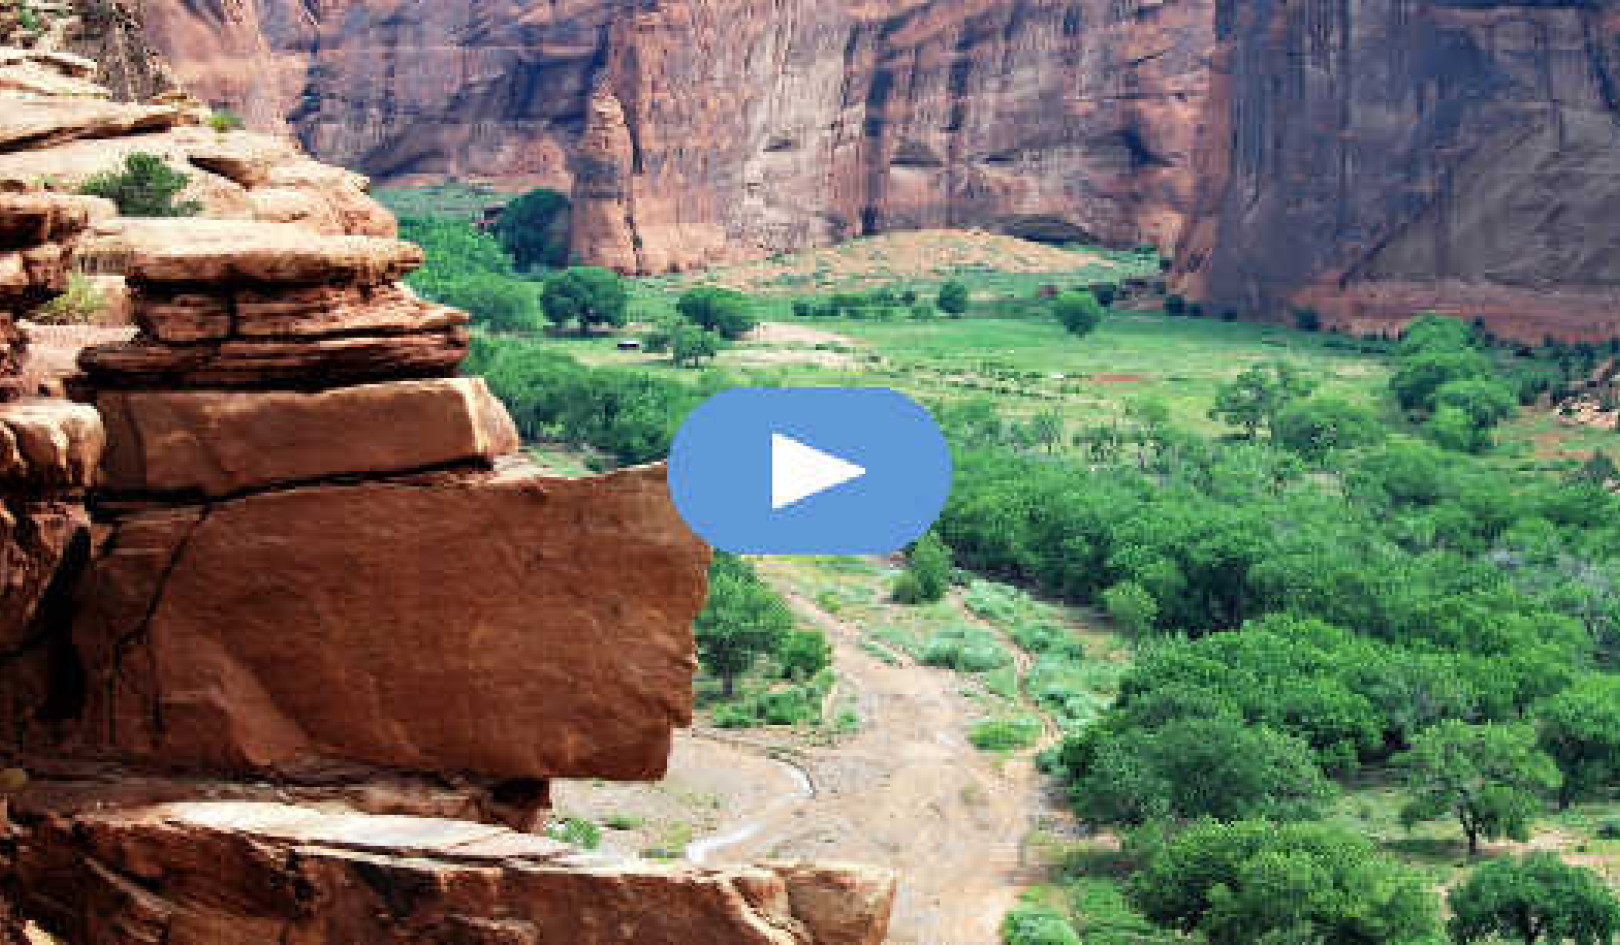 La mia esperienza con il leone di montagna nel Canyon de Chelly: incubo o guida spirituale? (Video)